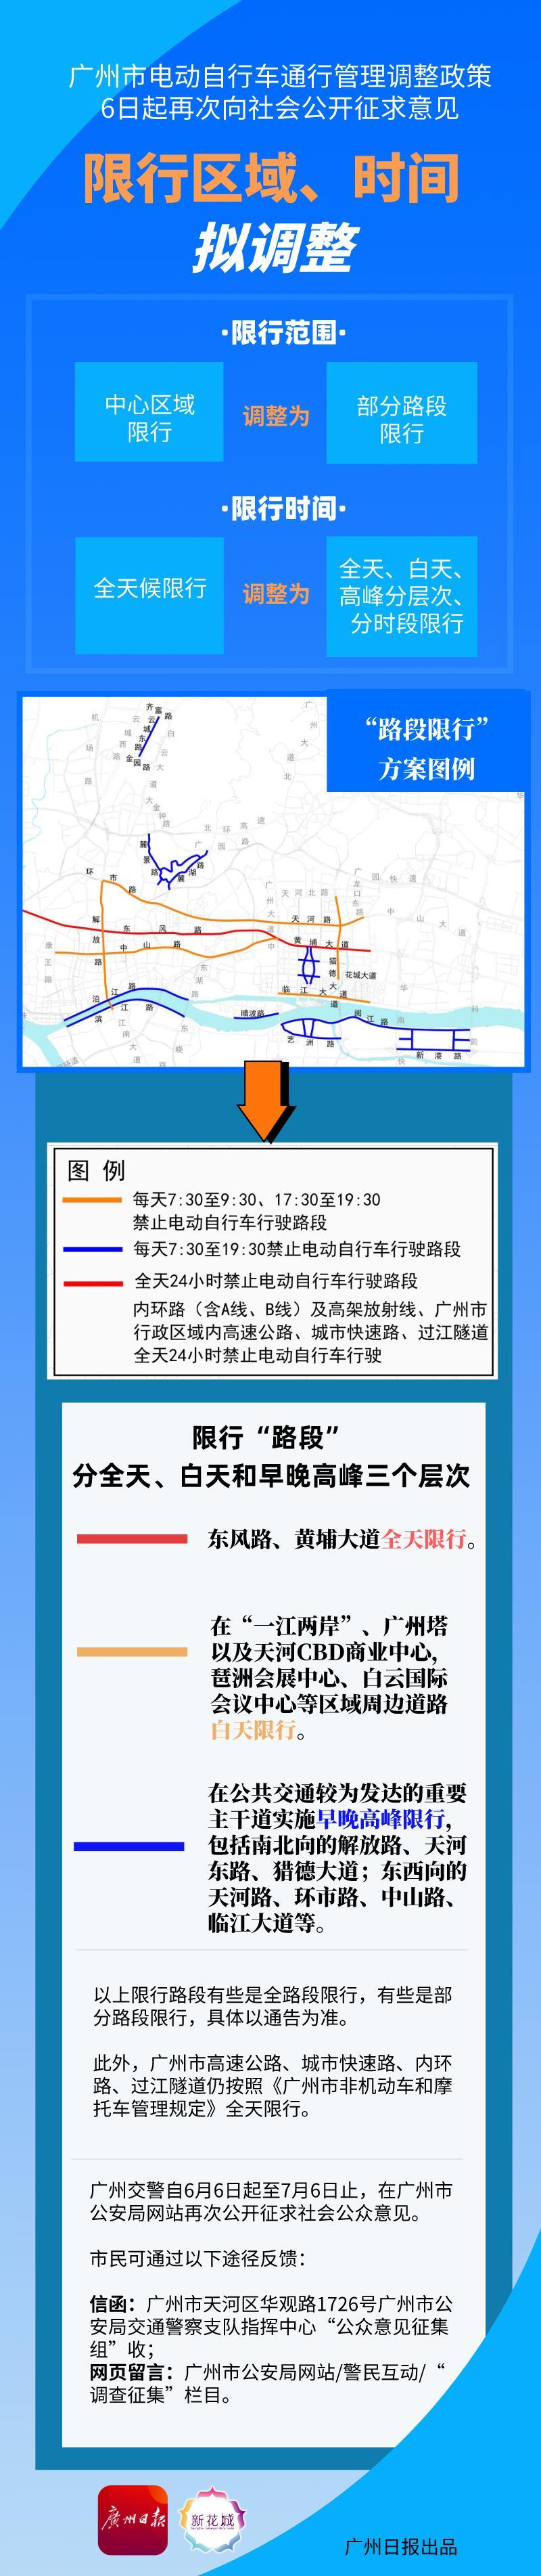 一图丨广州电动自行车管理政策再次征求意见